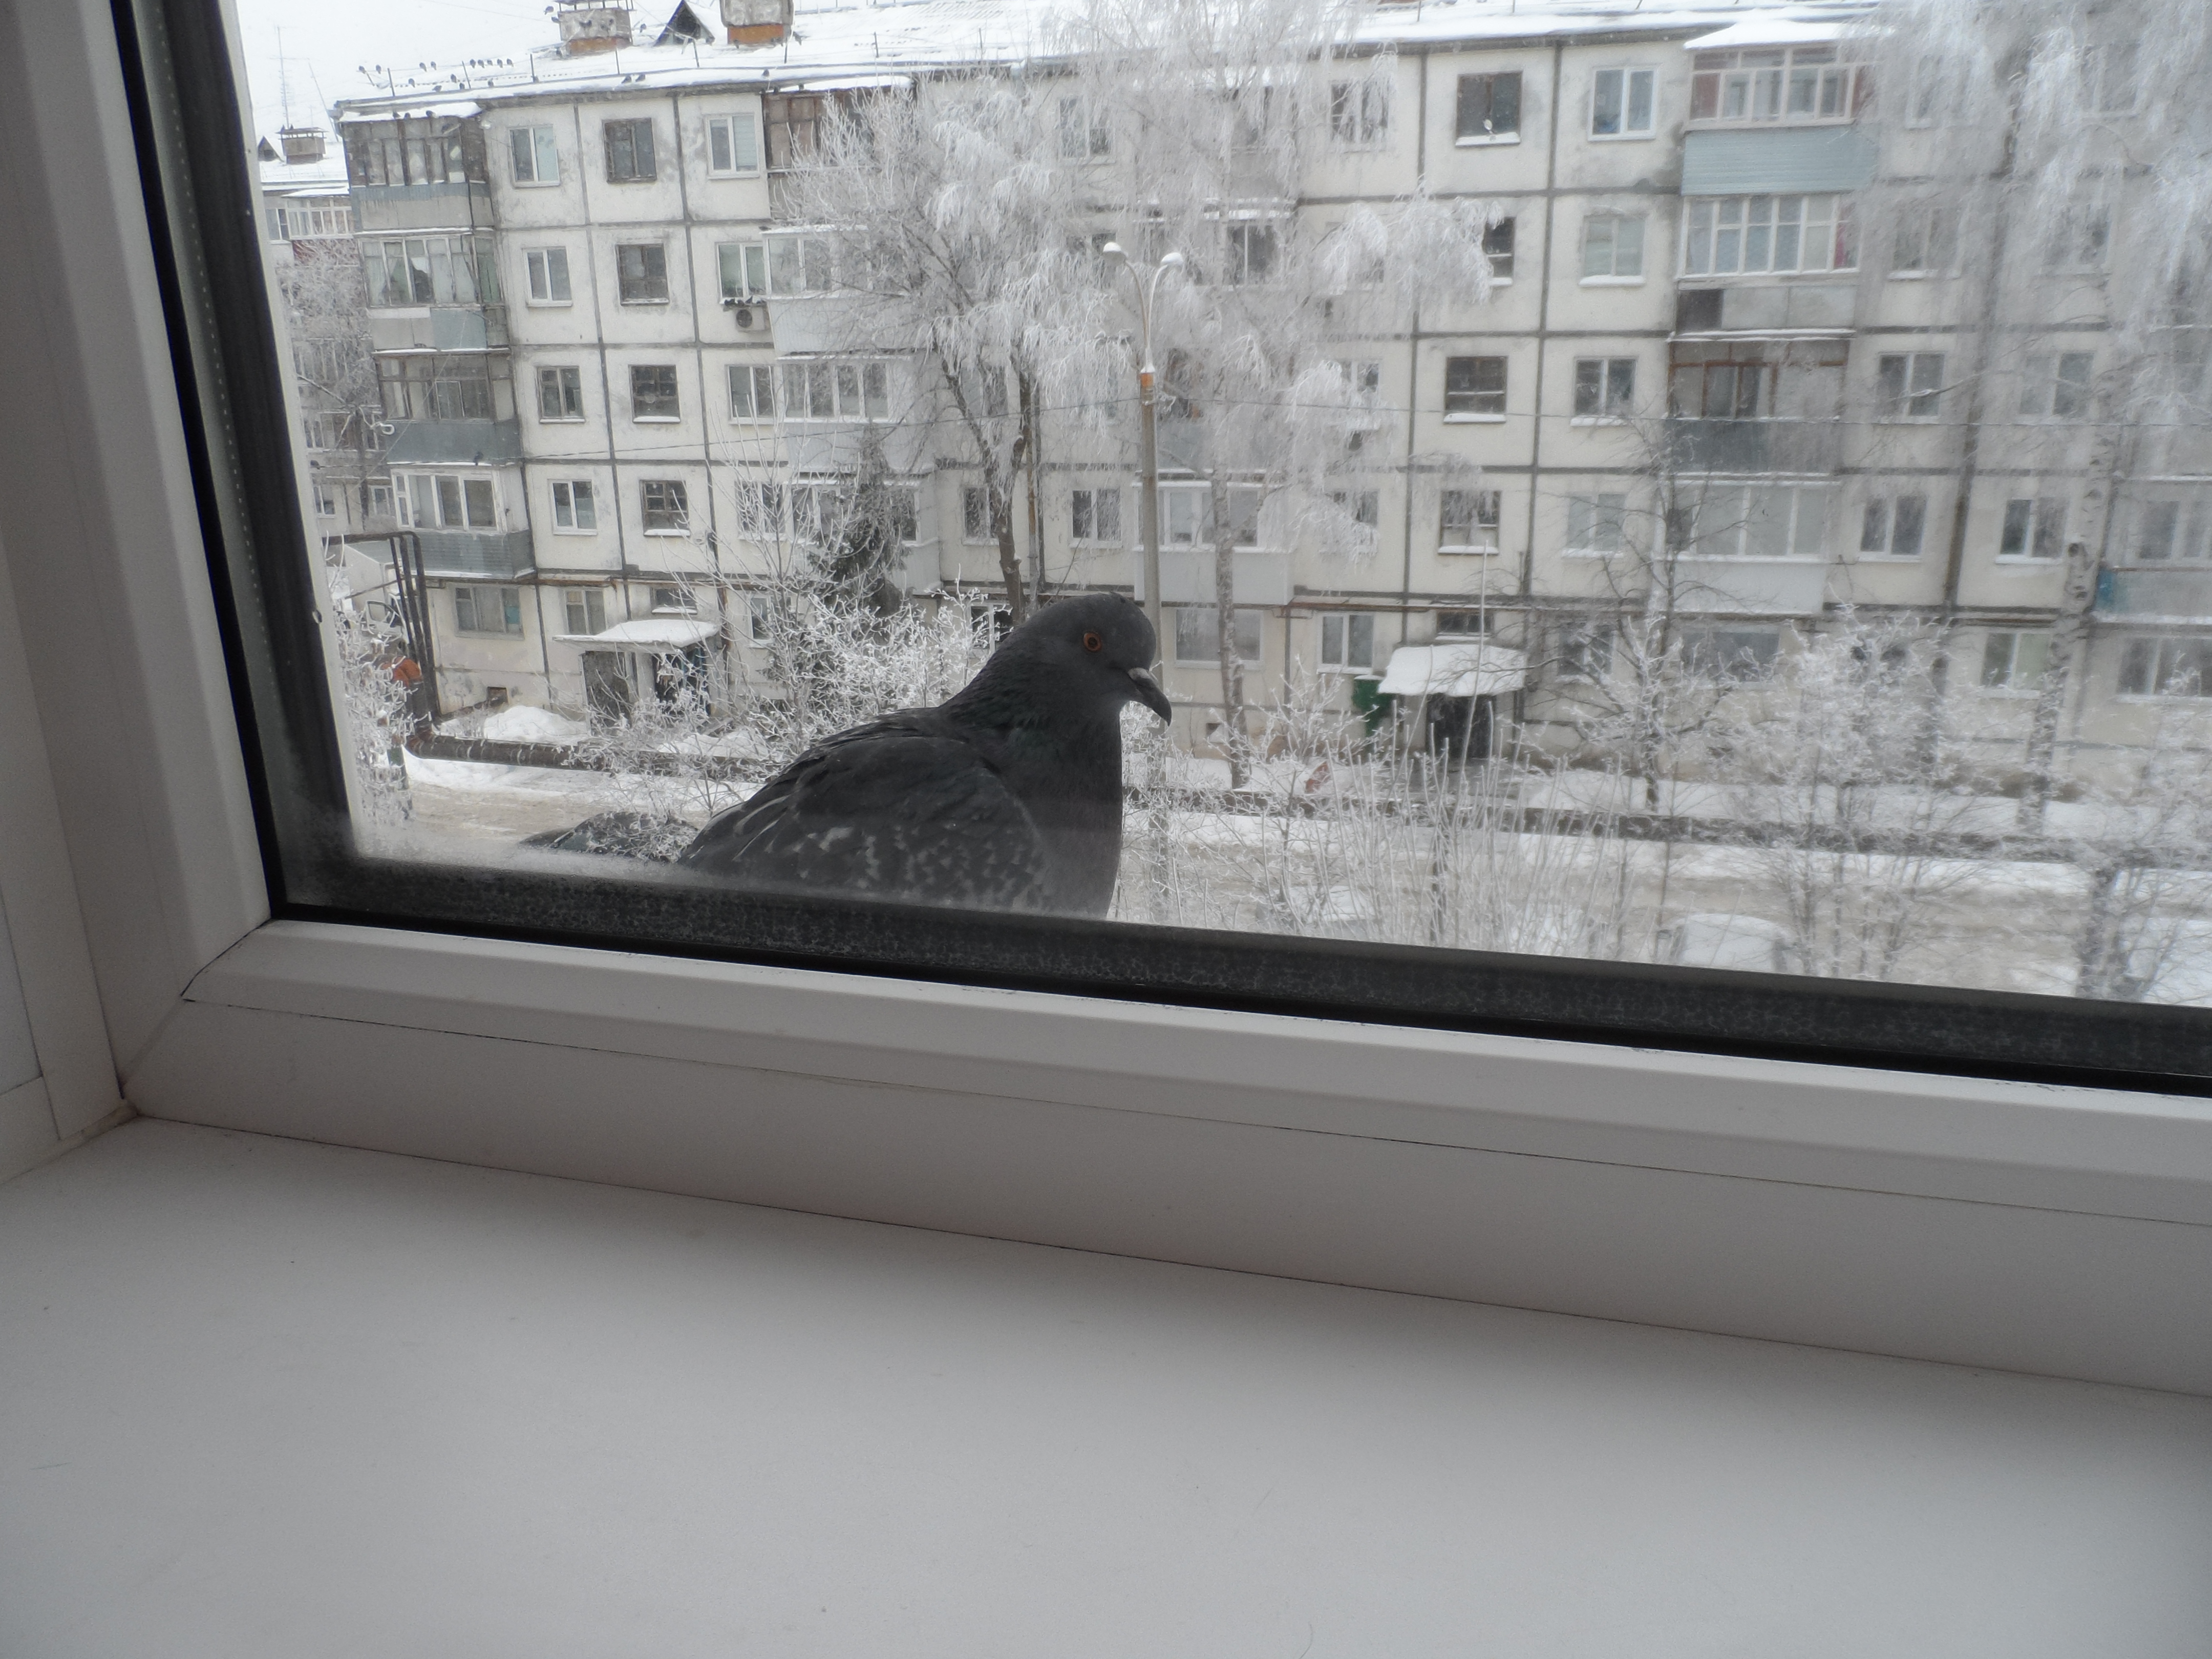 Ворон стучит в окно. Голубь на подоконнике. Птица на подоконнике. Птицы на окна. Птицы за окном.